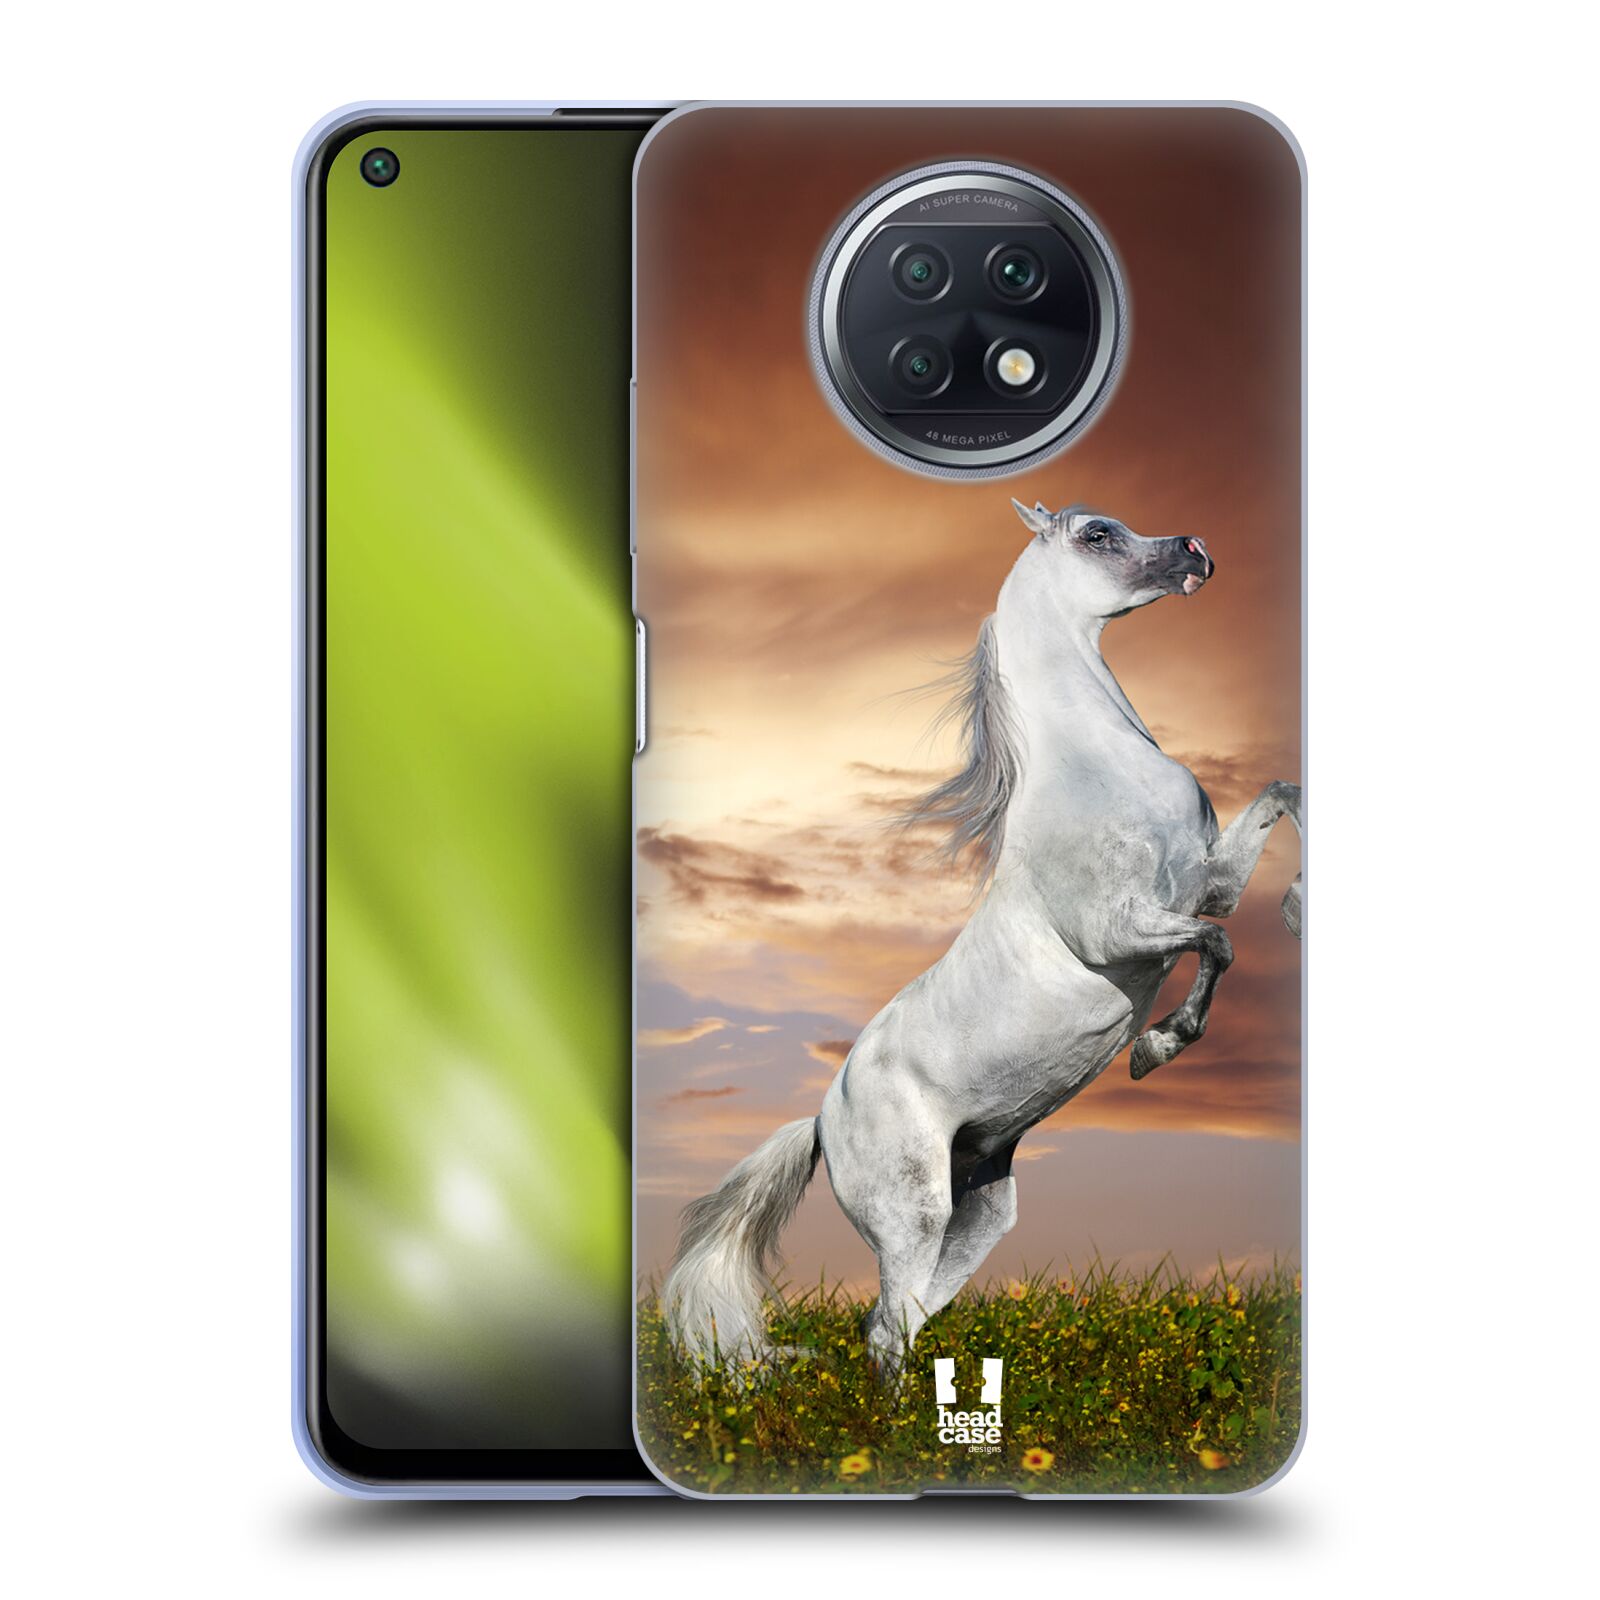 Plastový obal HEAD CASE na mobil Xiaomi Redmi Note 9T vzor Divočina, Divoký život a zvířata foto DIVOKÝ KŮŇ MUSTANG BÍLÁ